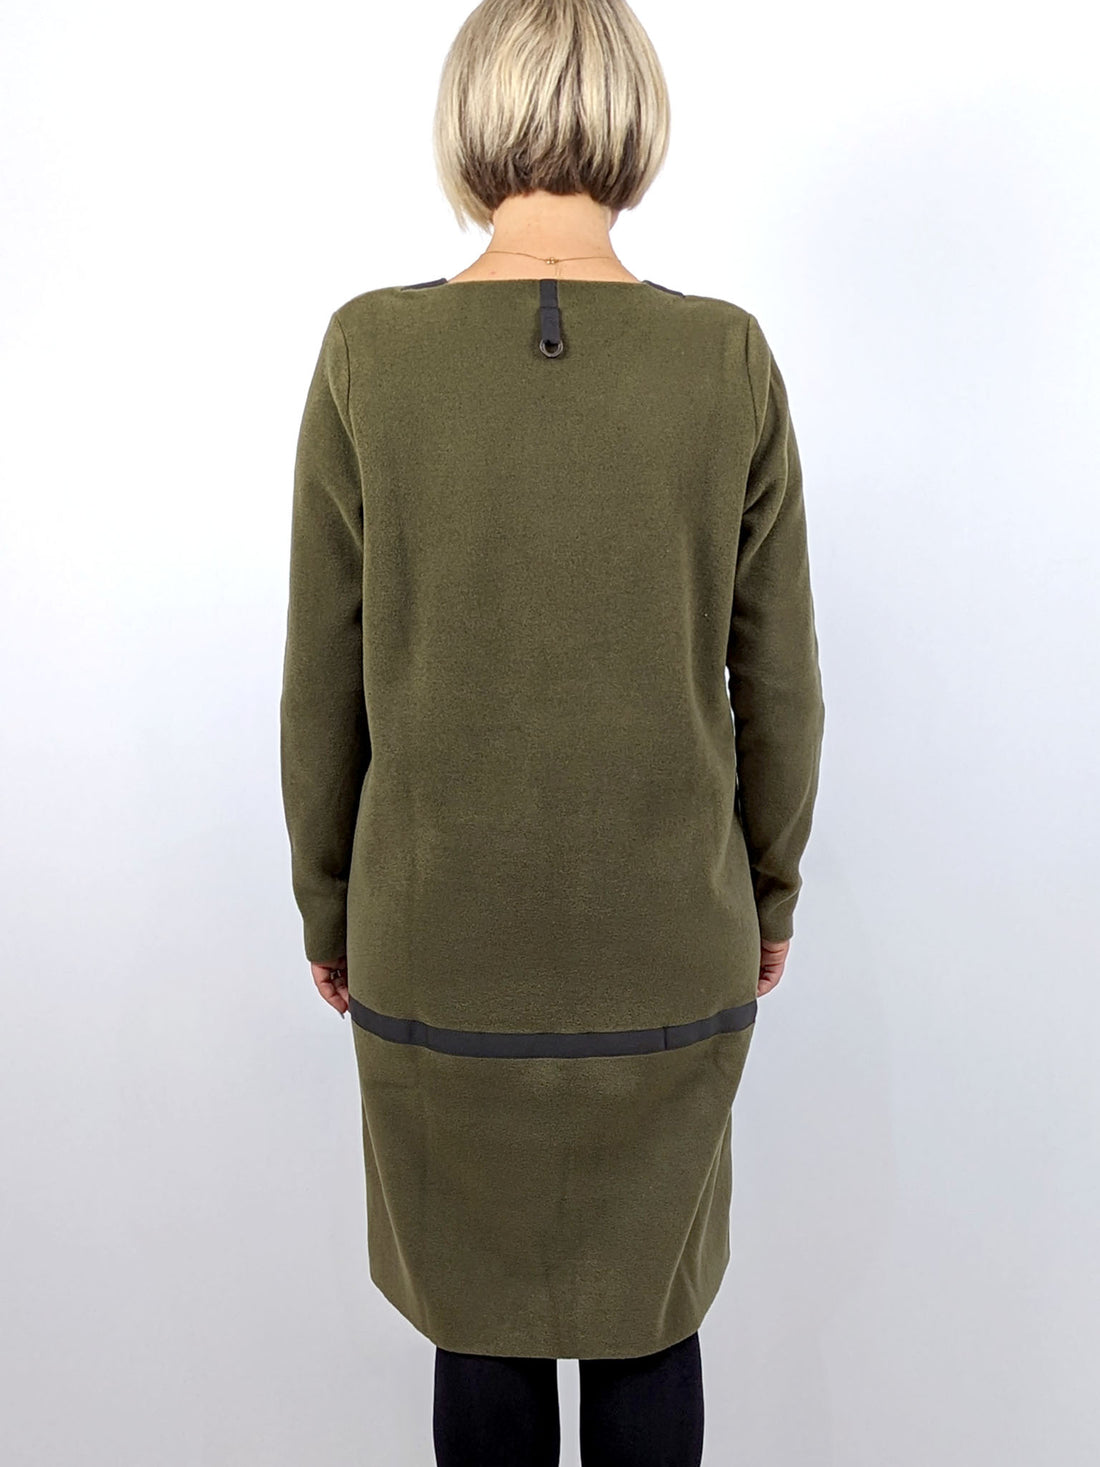 Henriette Steffensen 3245 Long Sleeve Fleece Dress - MOSS